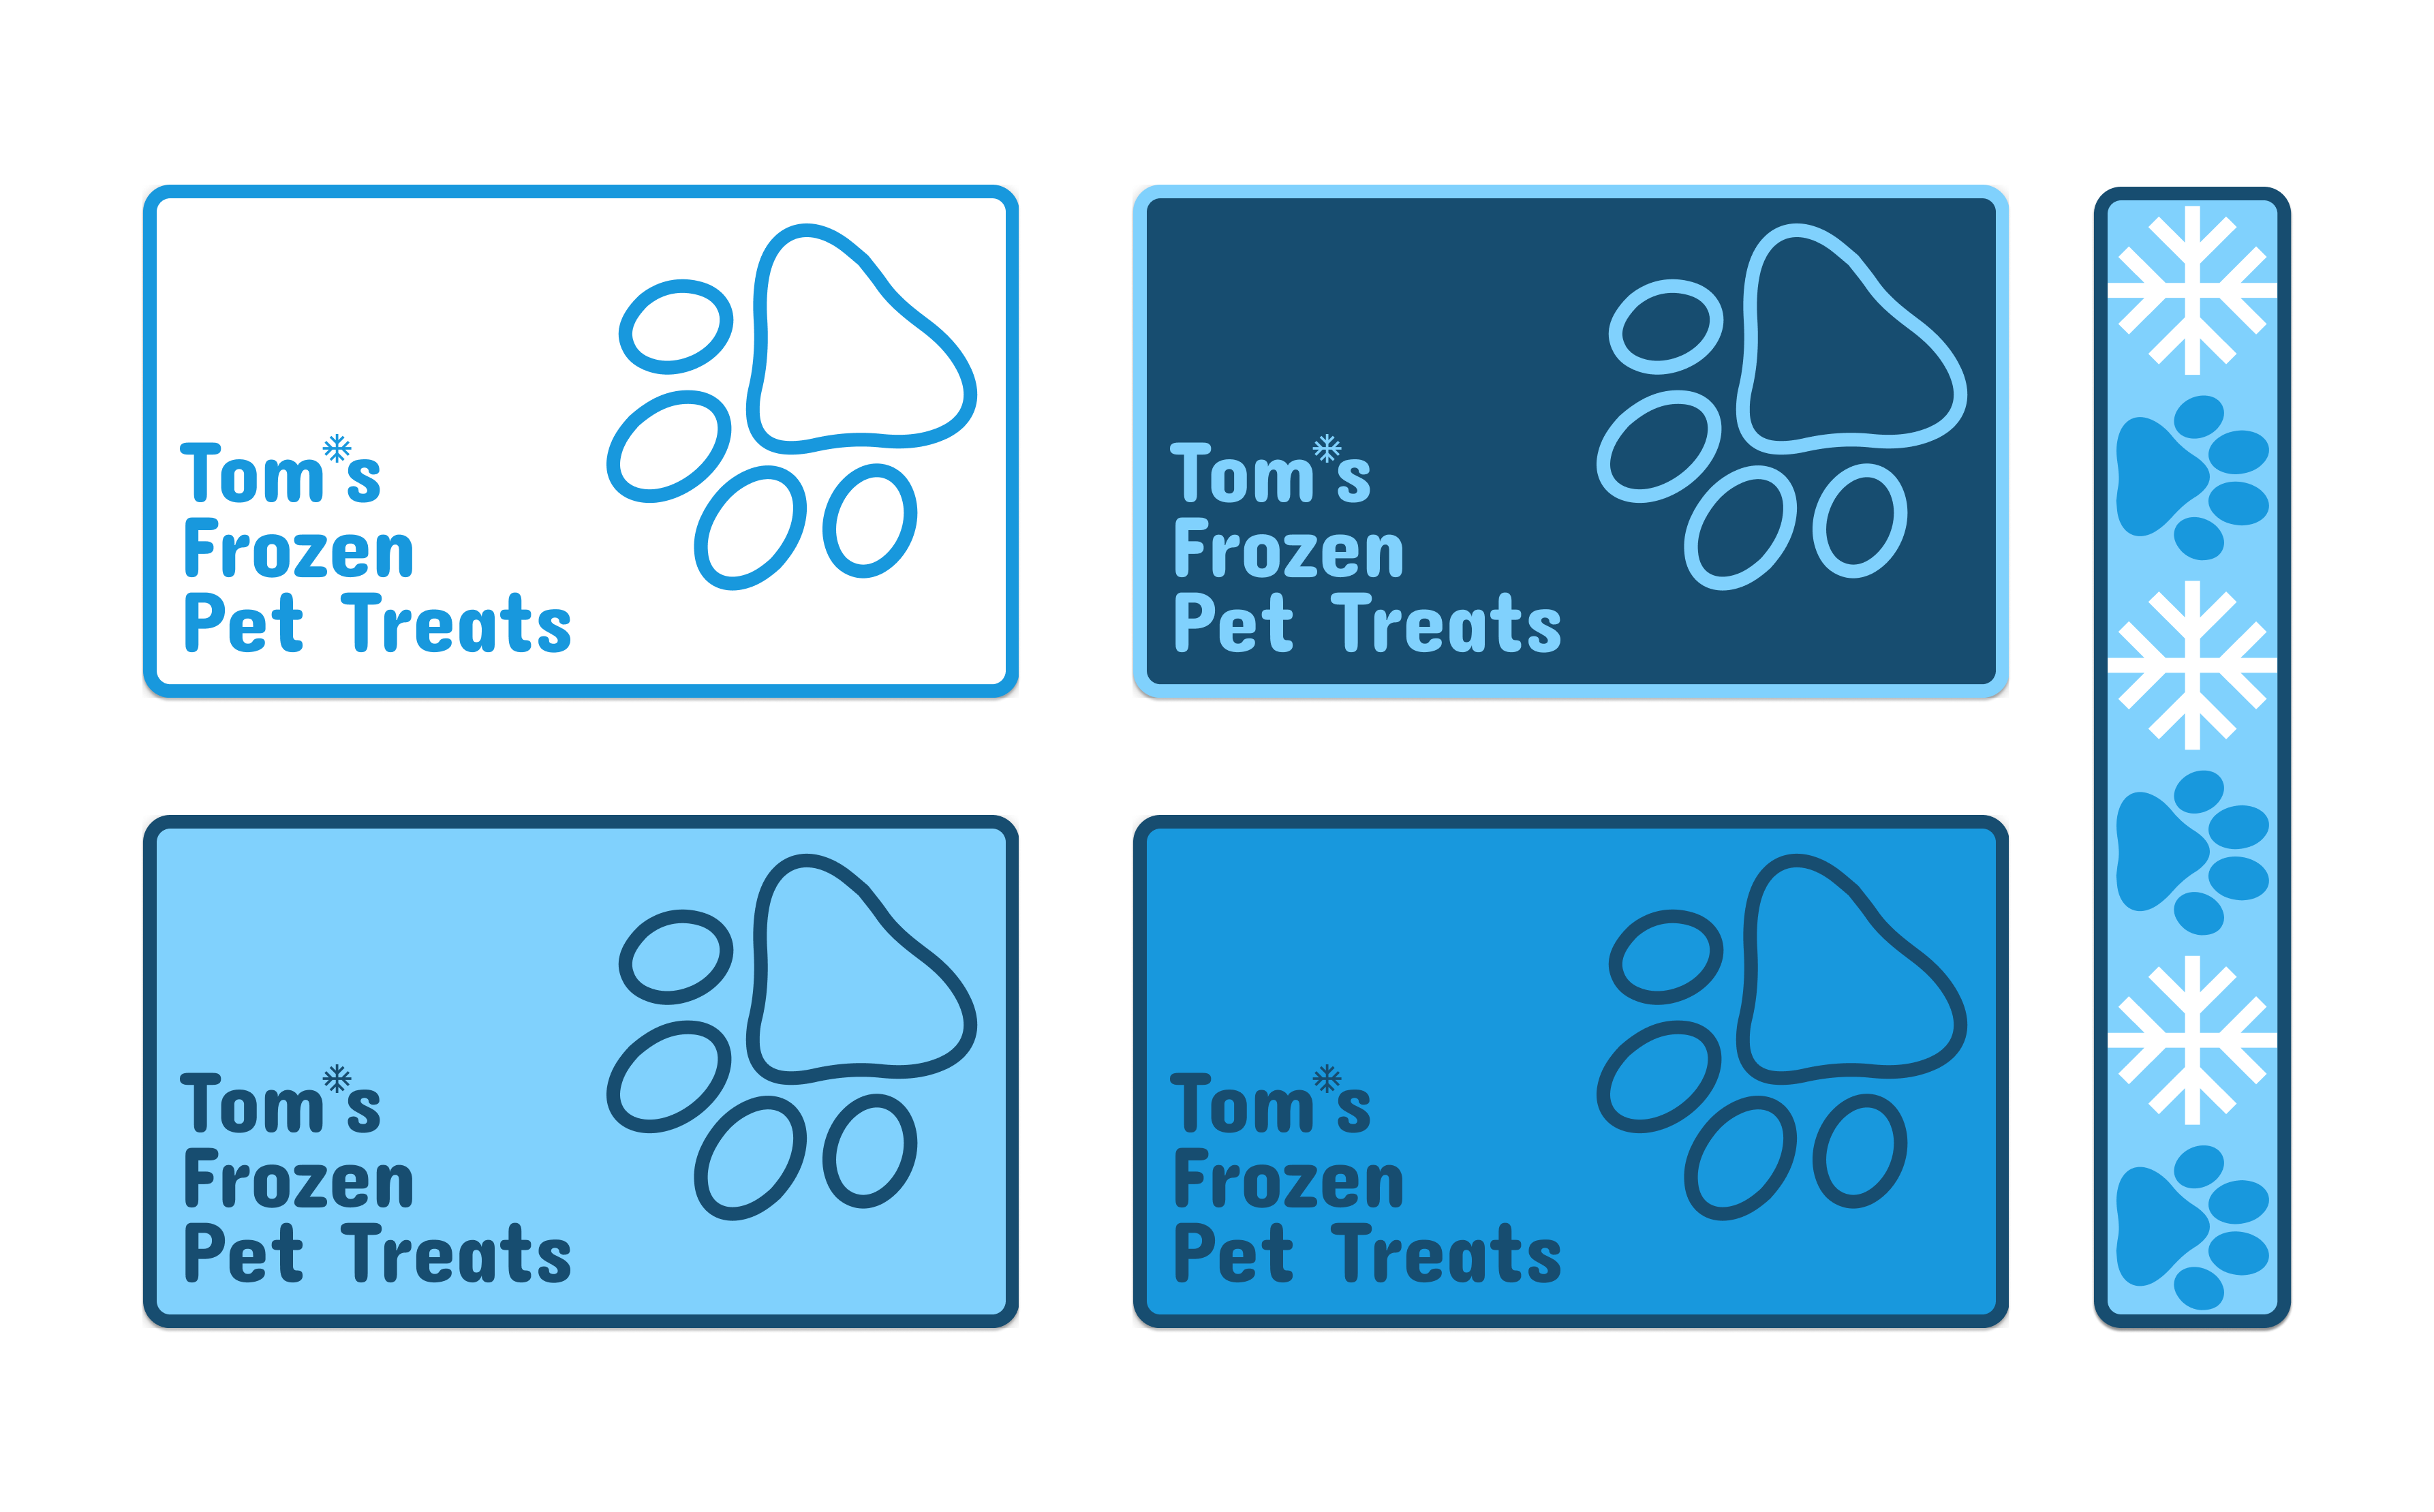 Branding Materials of Tom‘s Frozen Pet Treats